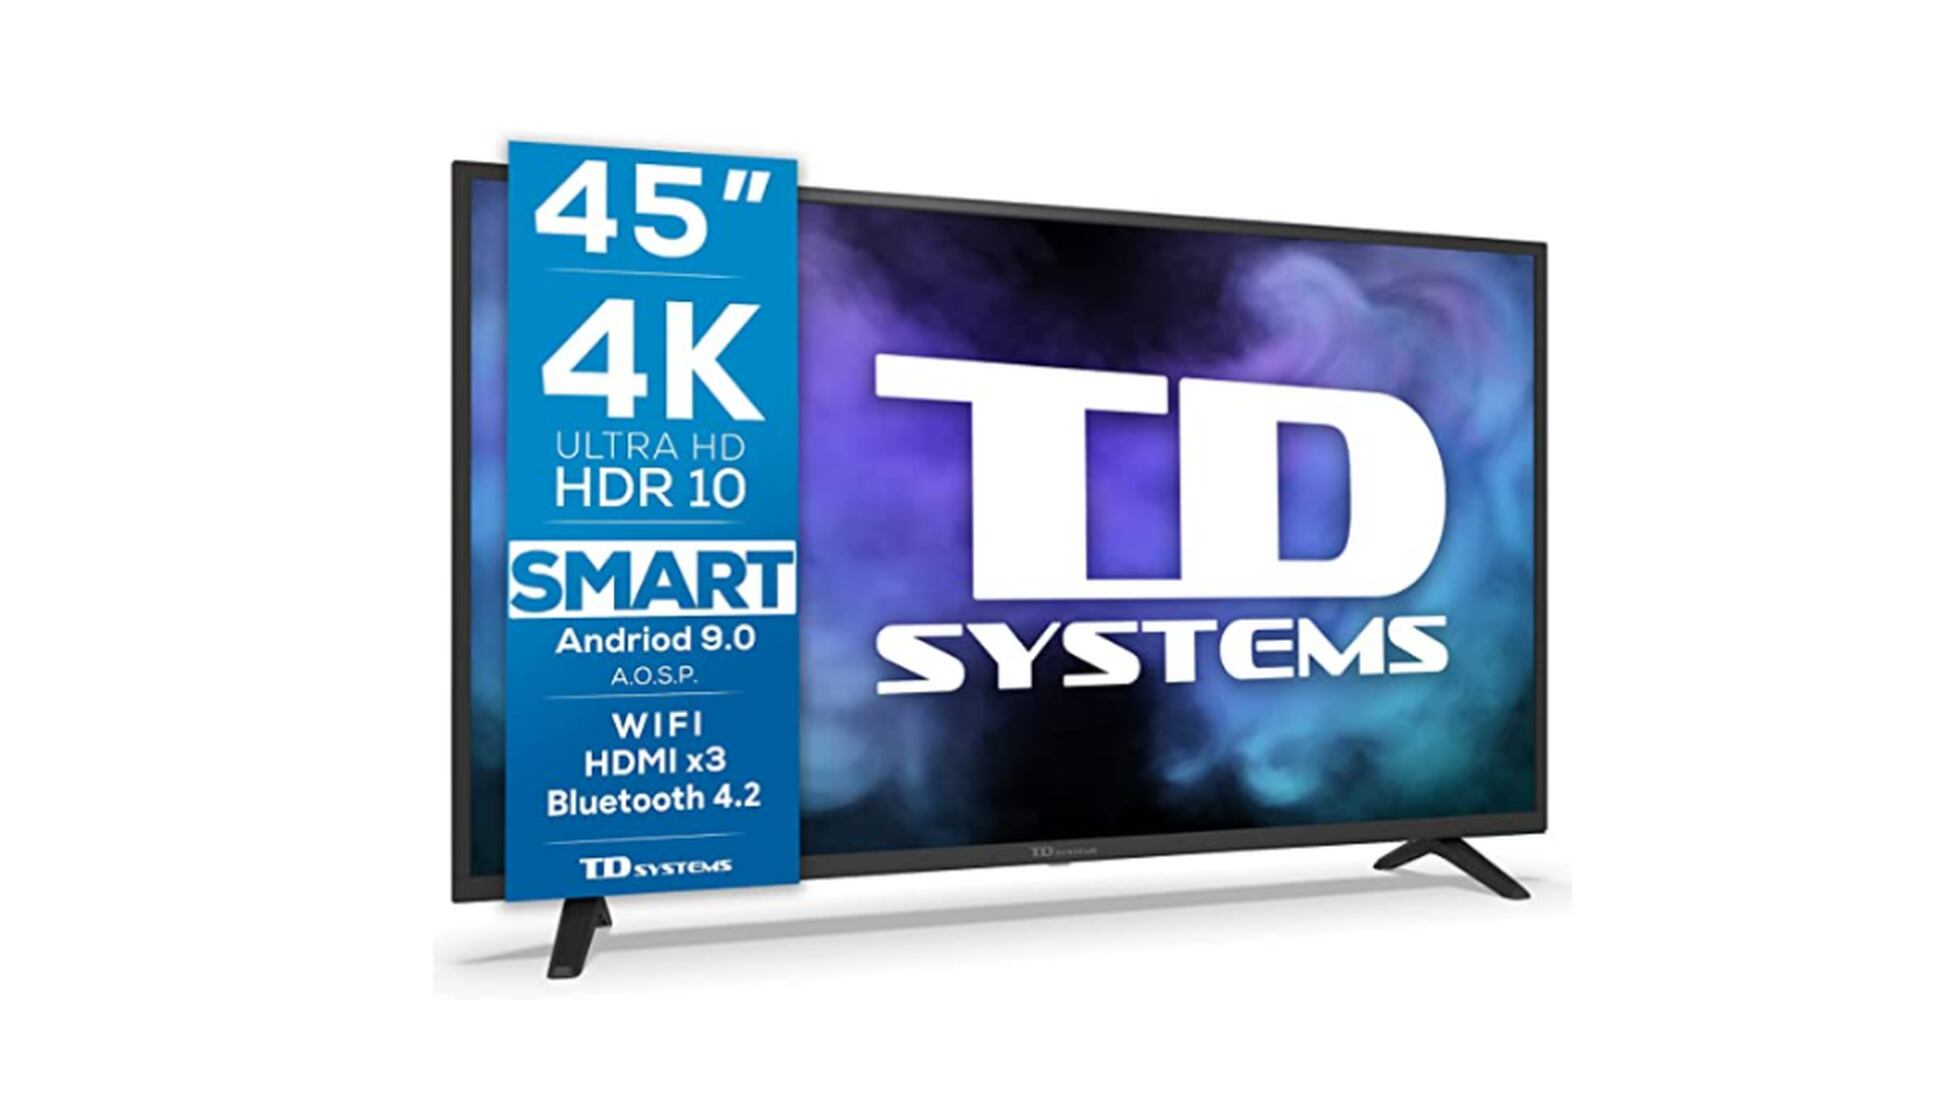 Televisor 32 Pulgadas HD, TD Systems precio sin cupones con